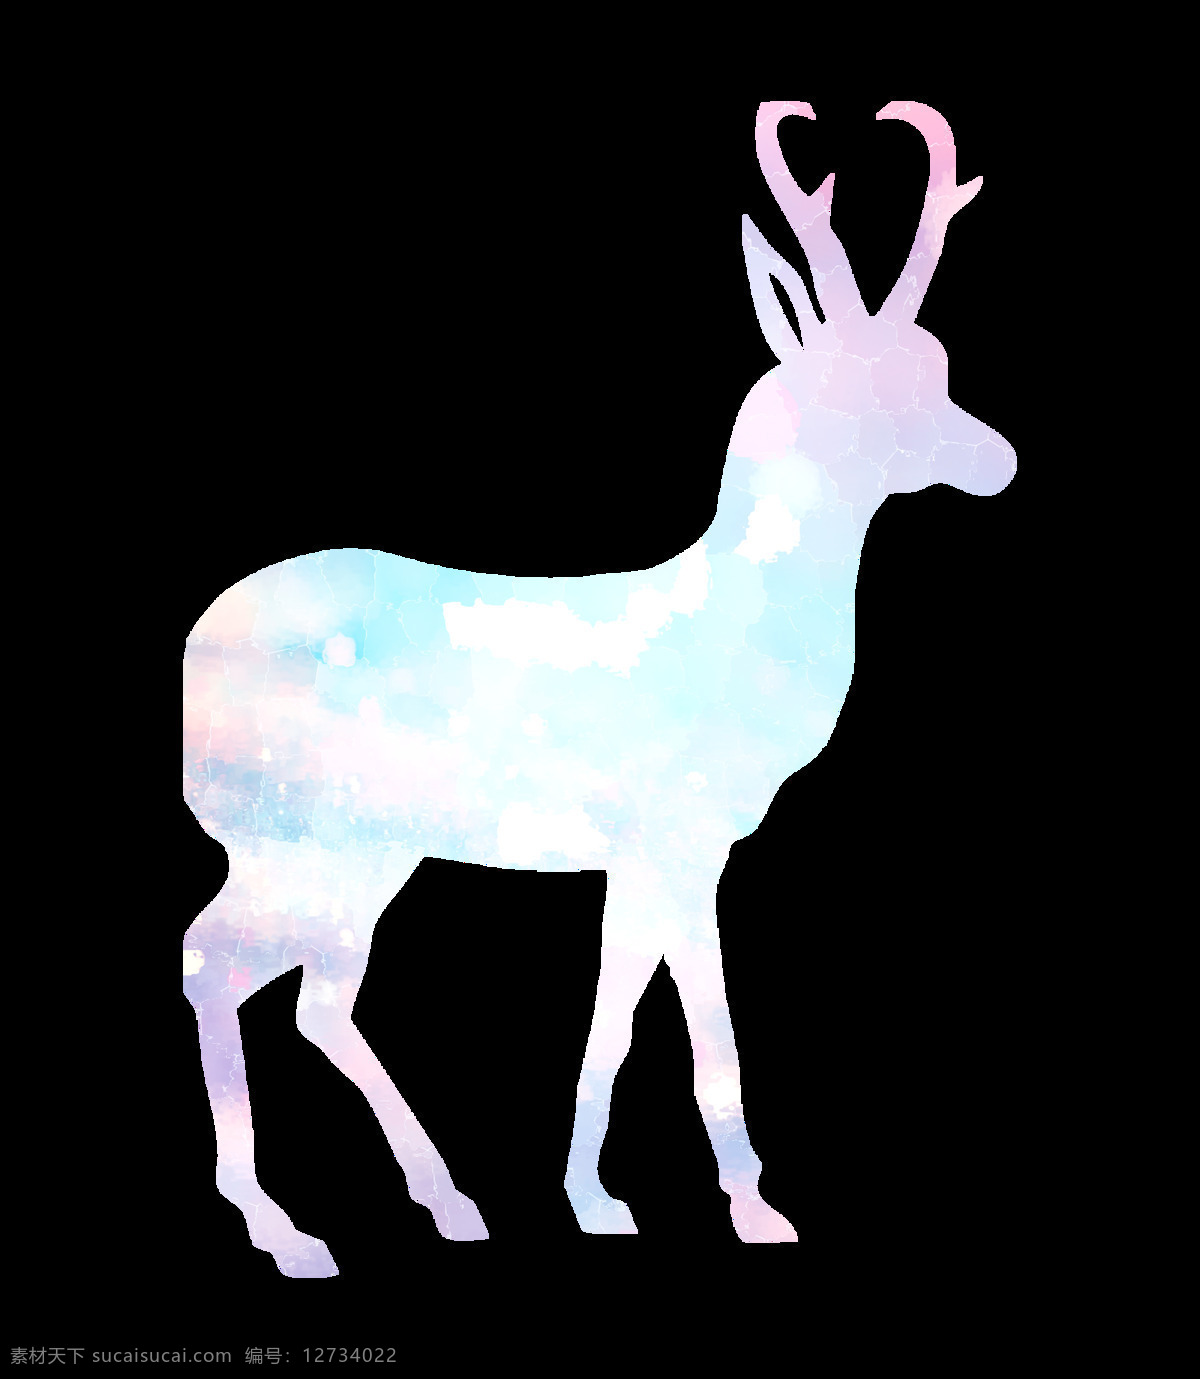 星空 圣诞 小鹿 冷色系 动物 效果 贺卡图 粉色 蓝色 圣诞节 节日 唯美 混色 幸运 麋鹿 混搭